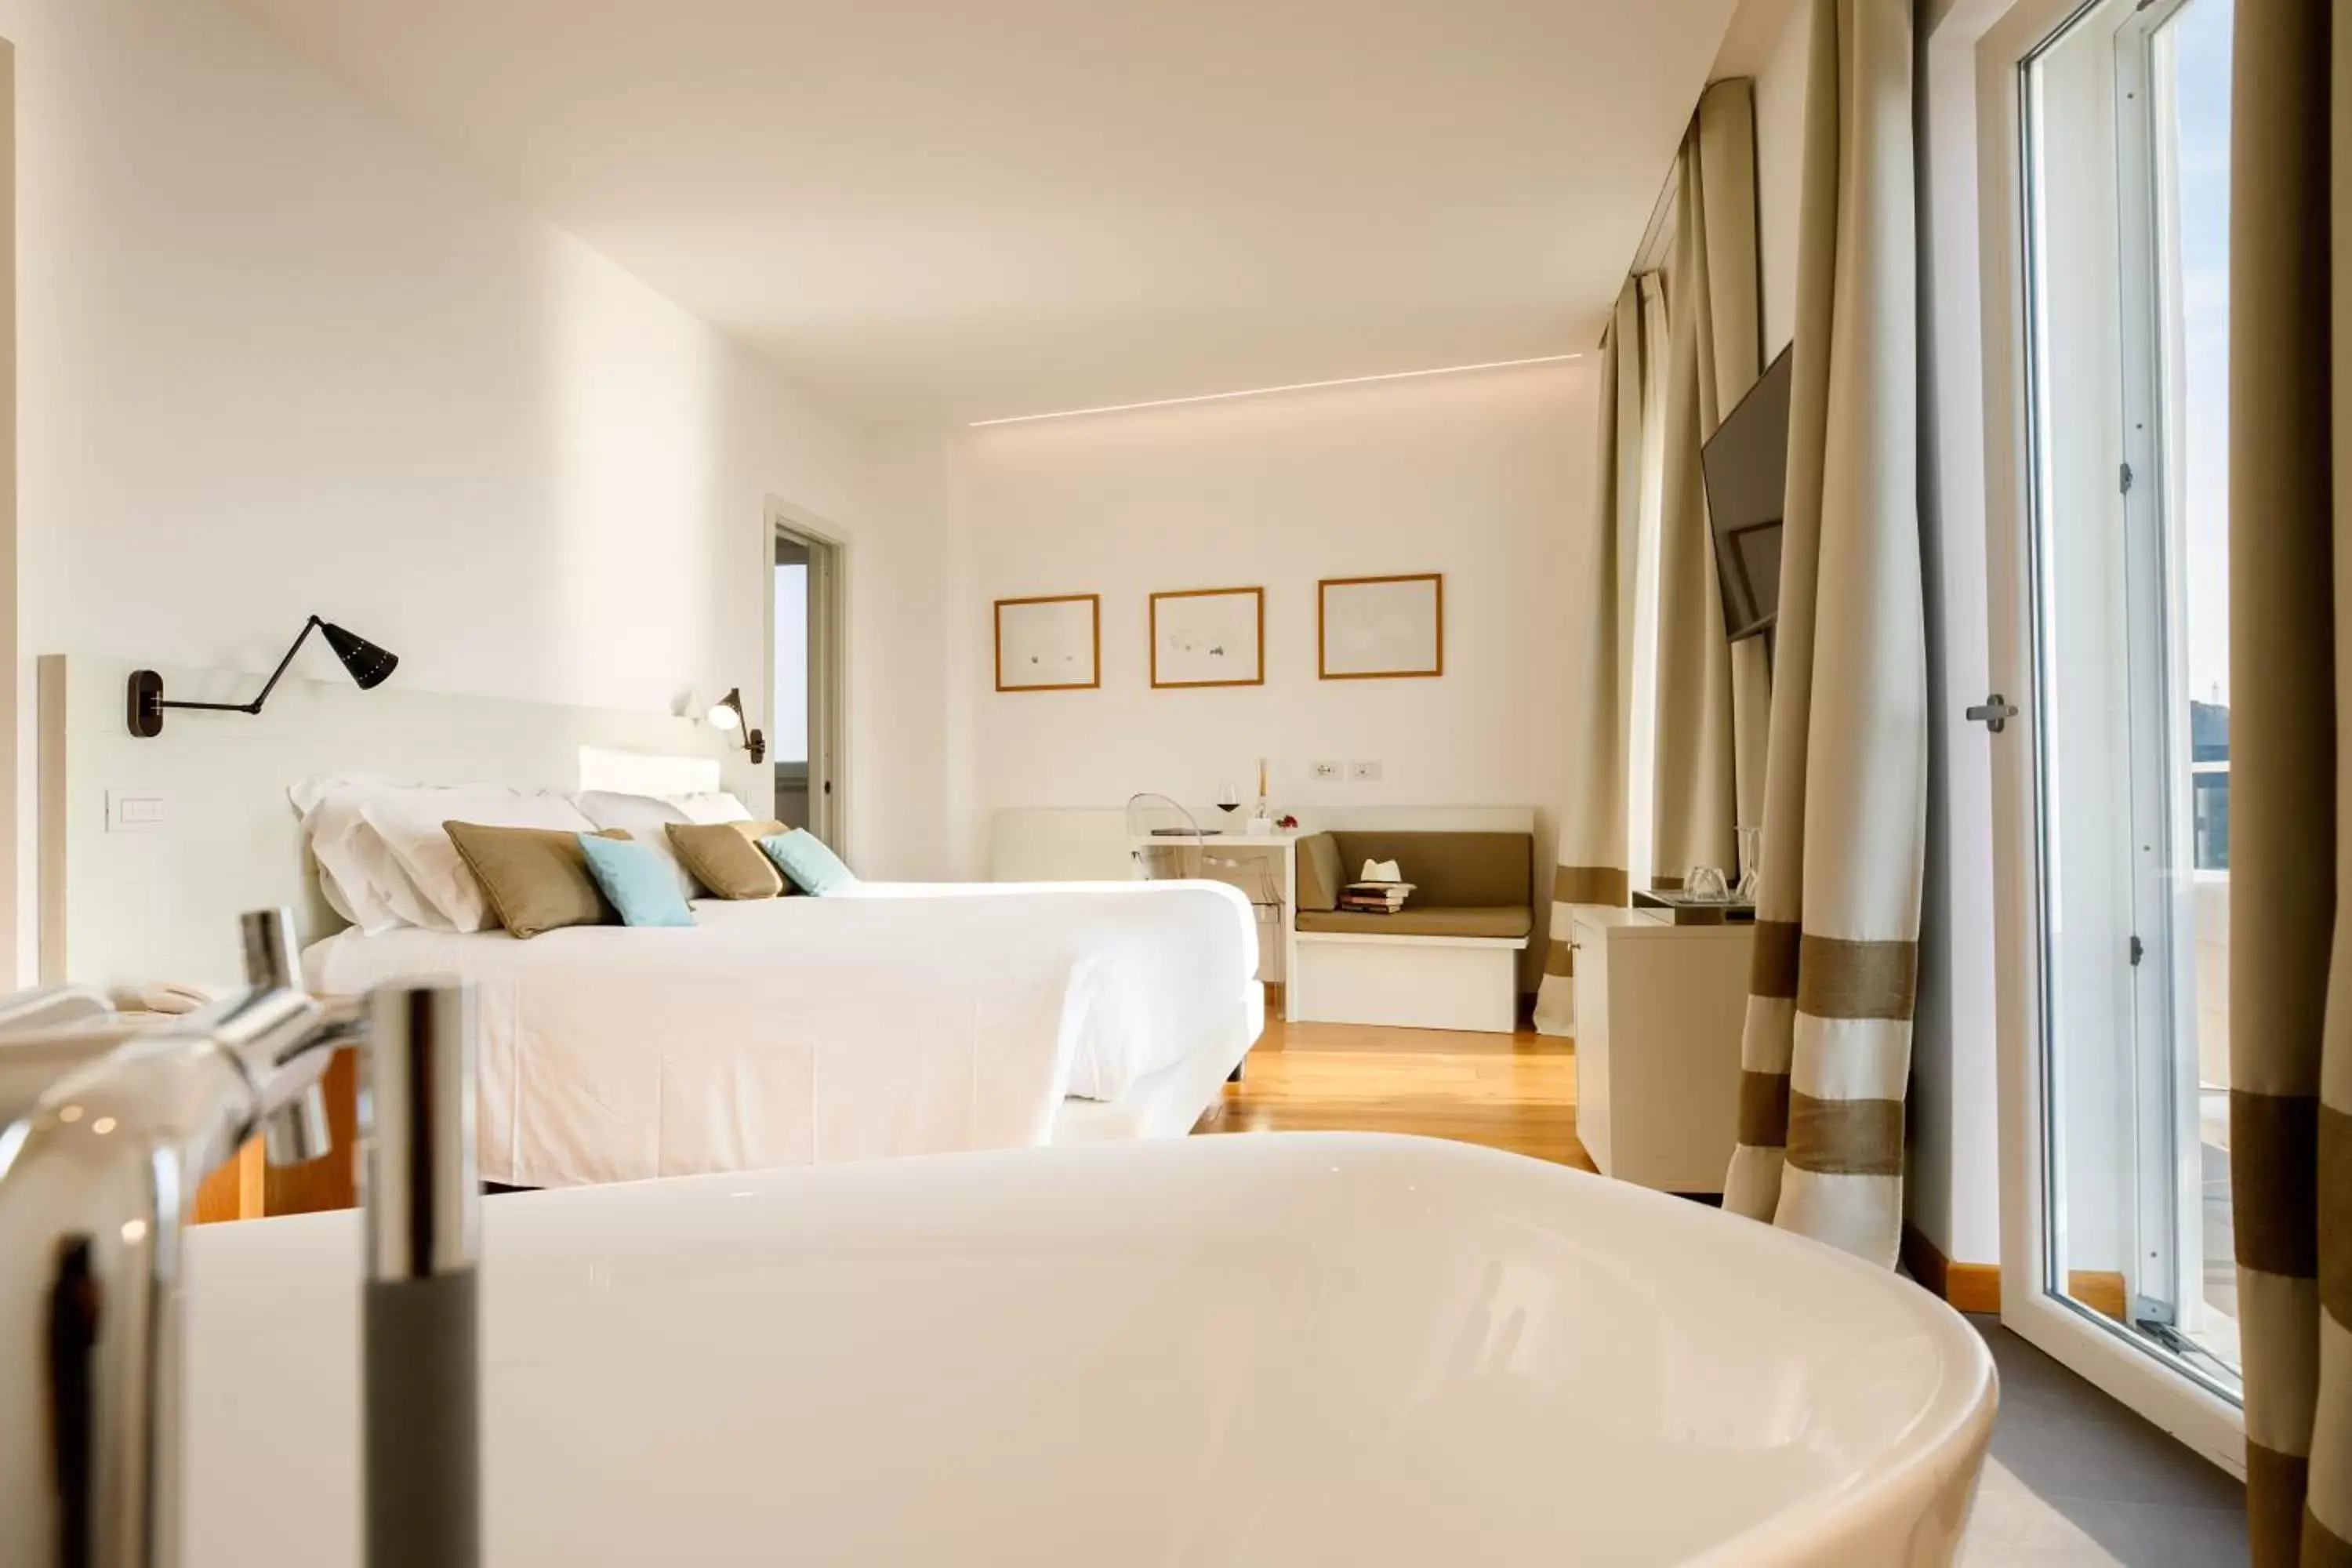 Photo of the whole room, Bathroom in Villa Fiorella Art Hotel